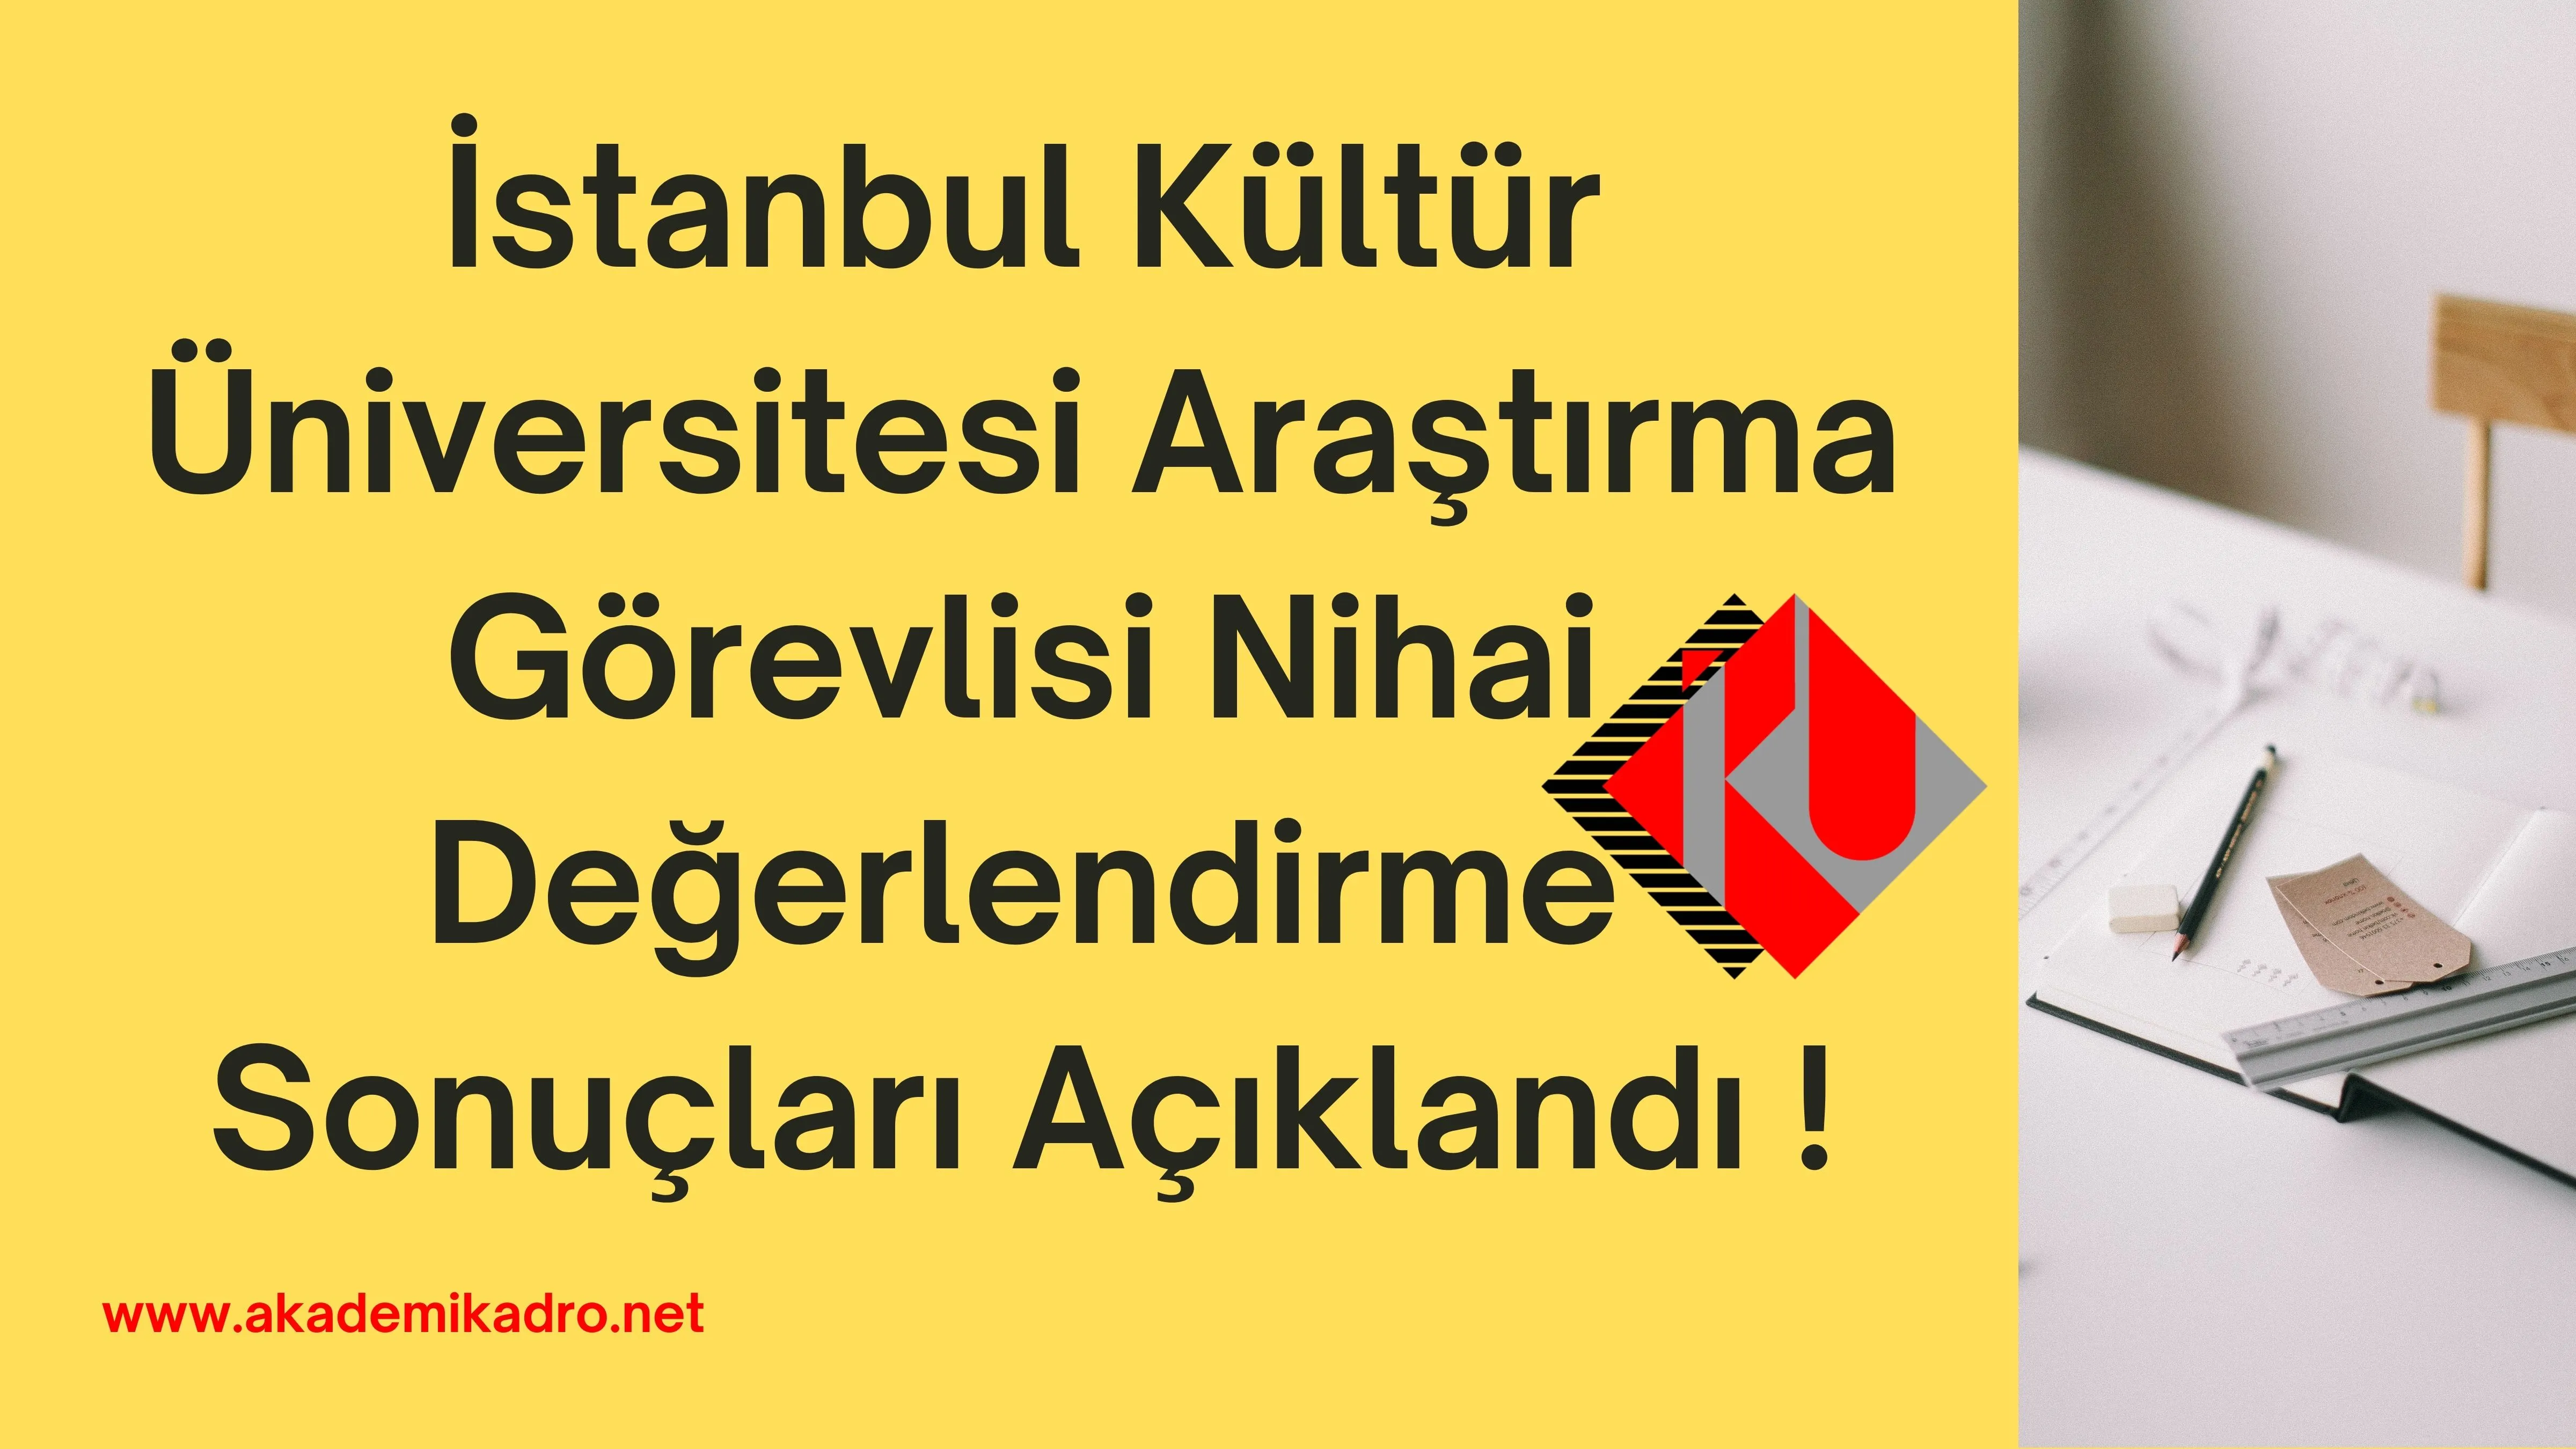 İstanbul Kültür Üniversitesi 30 Eylül 2022 tarihinde ilan edilen Araştırma görevlisi alım ilanı nihai değerlendirme sonuçları açıklandı.